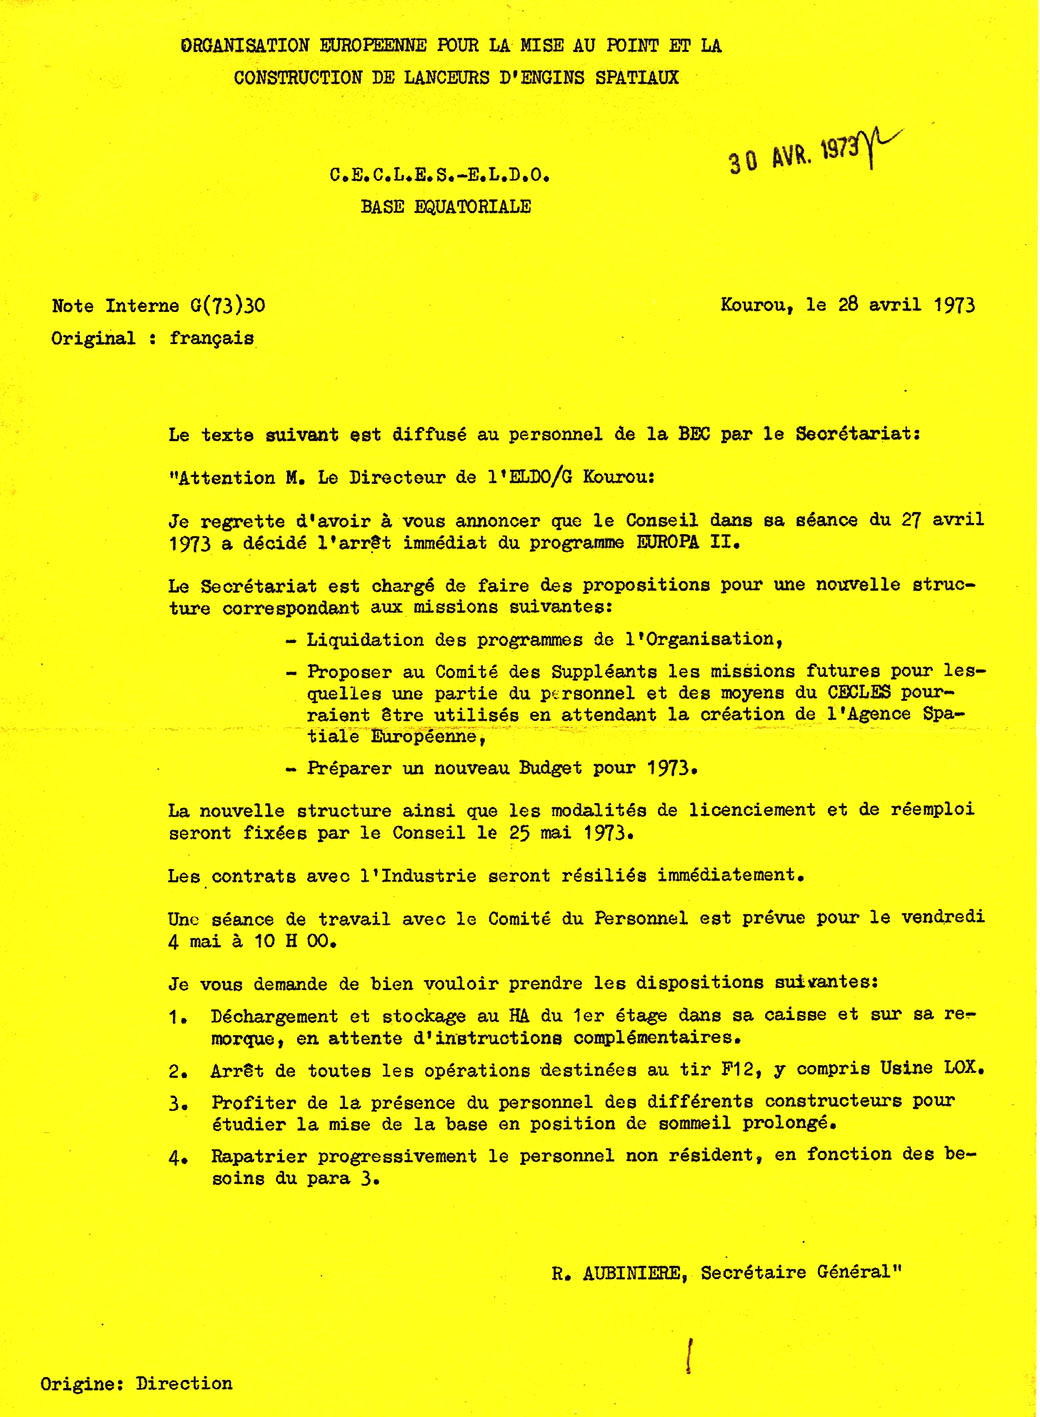 lettre du général Aubinière du 28 avril 1973 annonçant l'arrêt du programme Europa 2